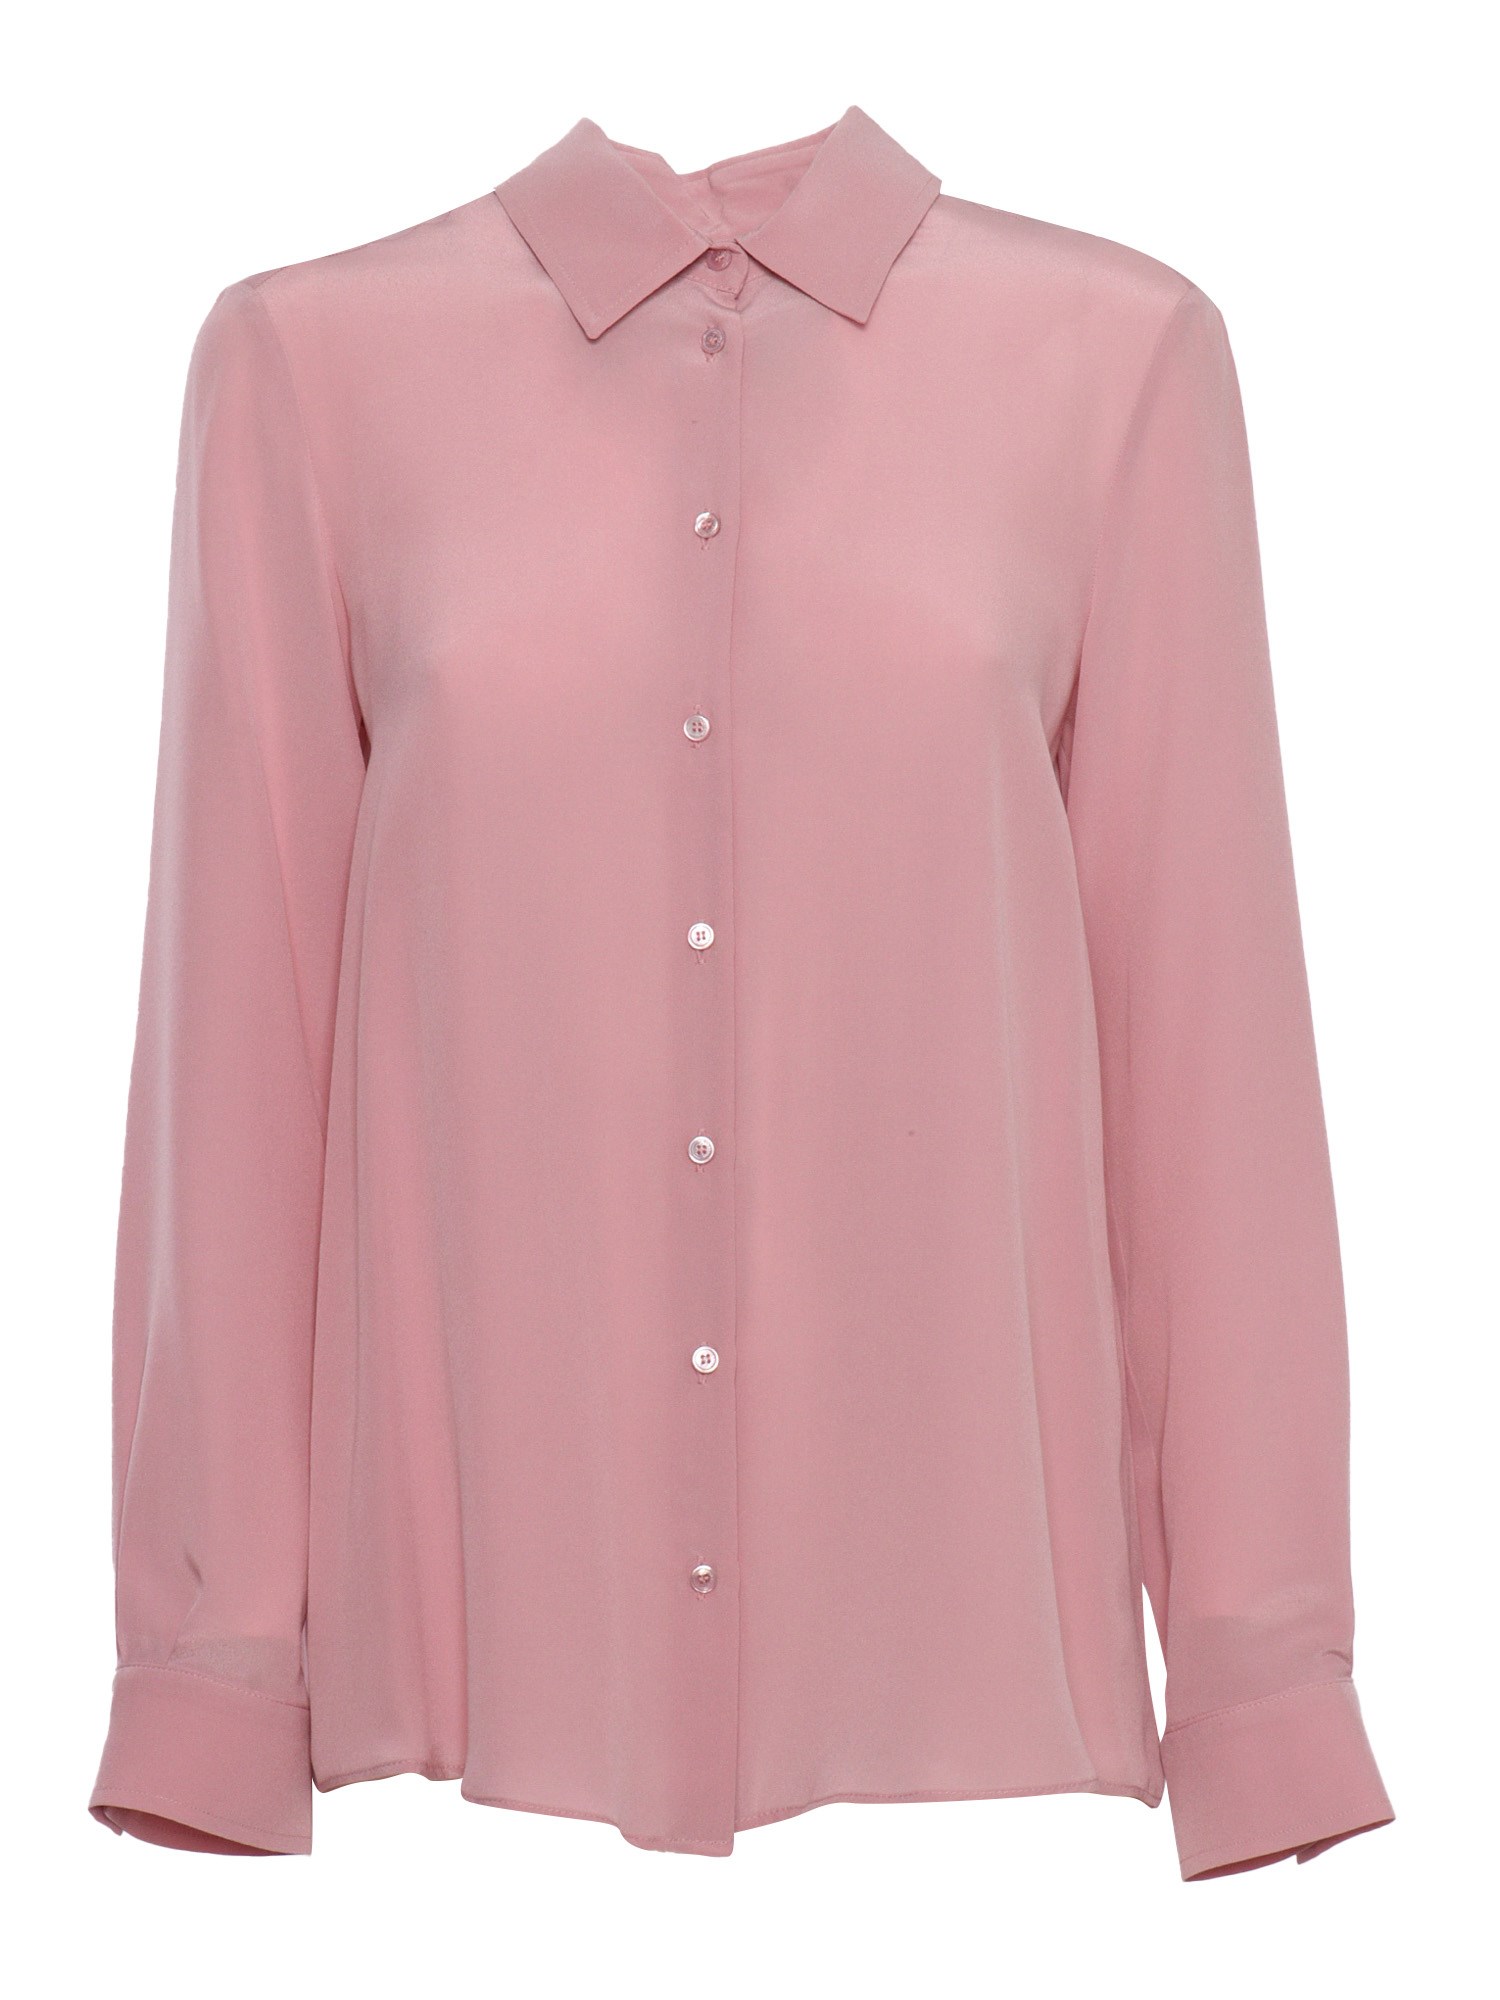 Max Mara Pink Silk Shirt